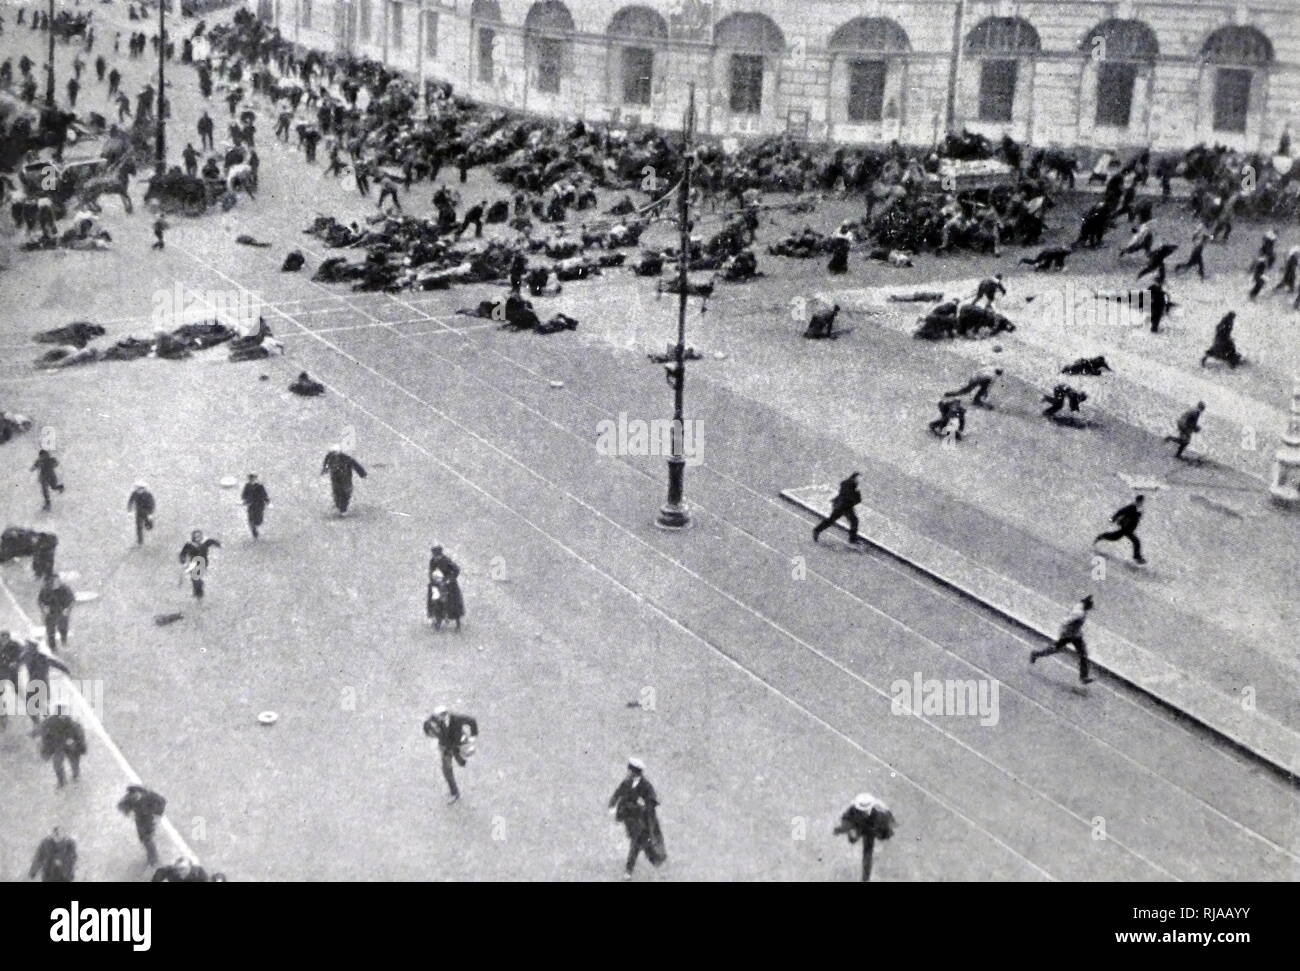 Foto, Menschen für Sicherheit während eines shooting Episode in einer Petersburger Straße läuft. Russische Revolution, St. Petersburg, 1917 Stockfoto